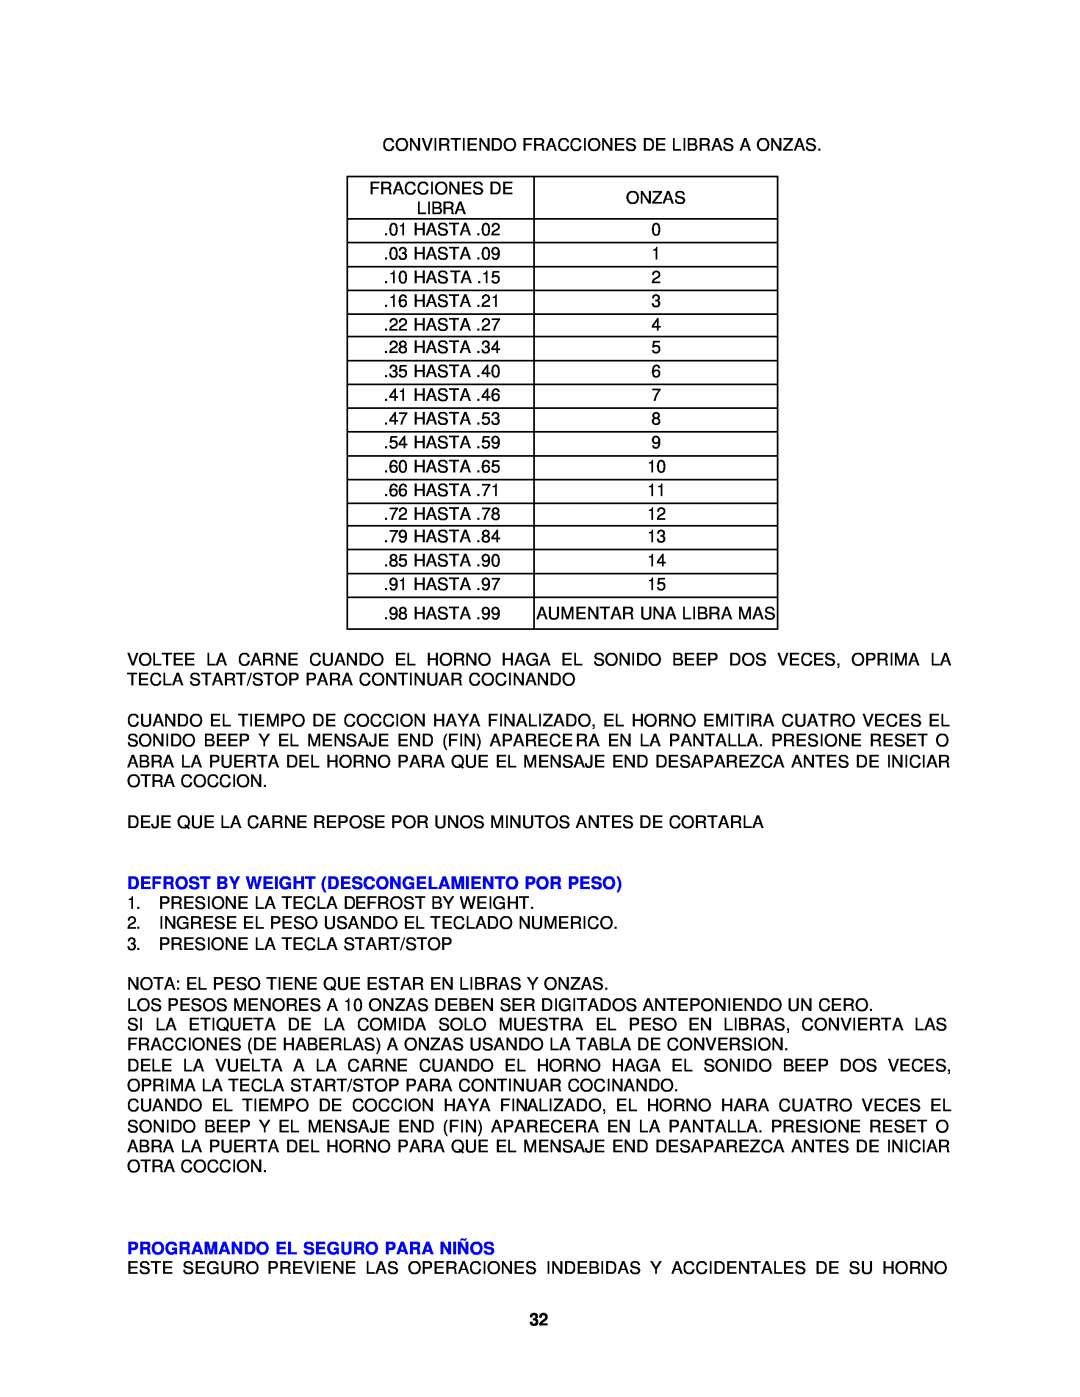 Avanti MO7180TW, MO7280TB instruction manual Defrost By Weight Descongelamiento Por Peso, Programando El Seguro Para Niños 